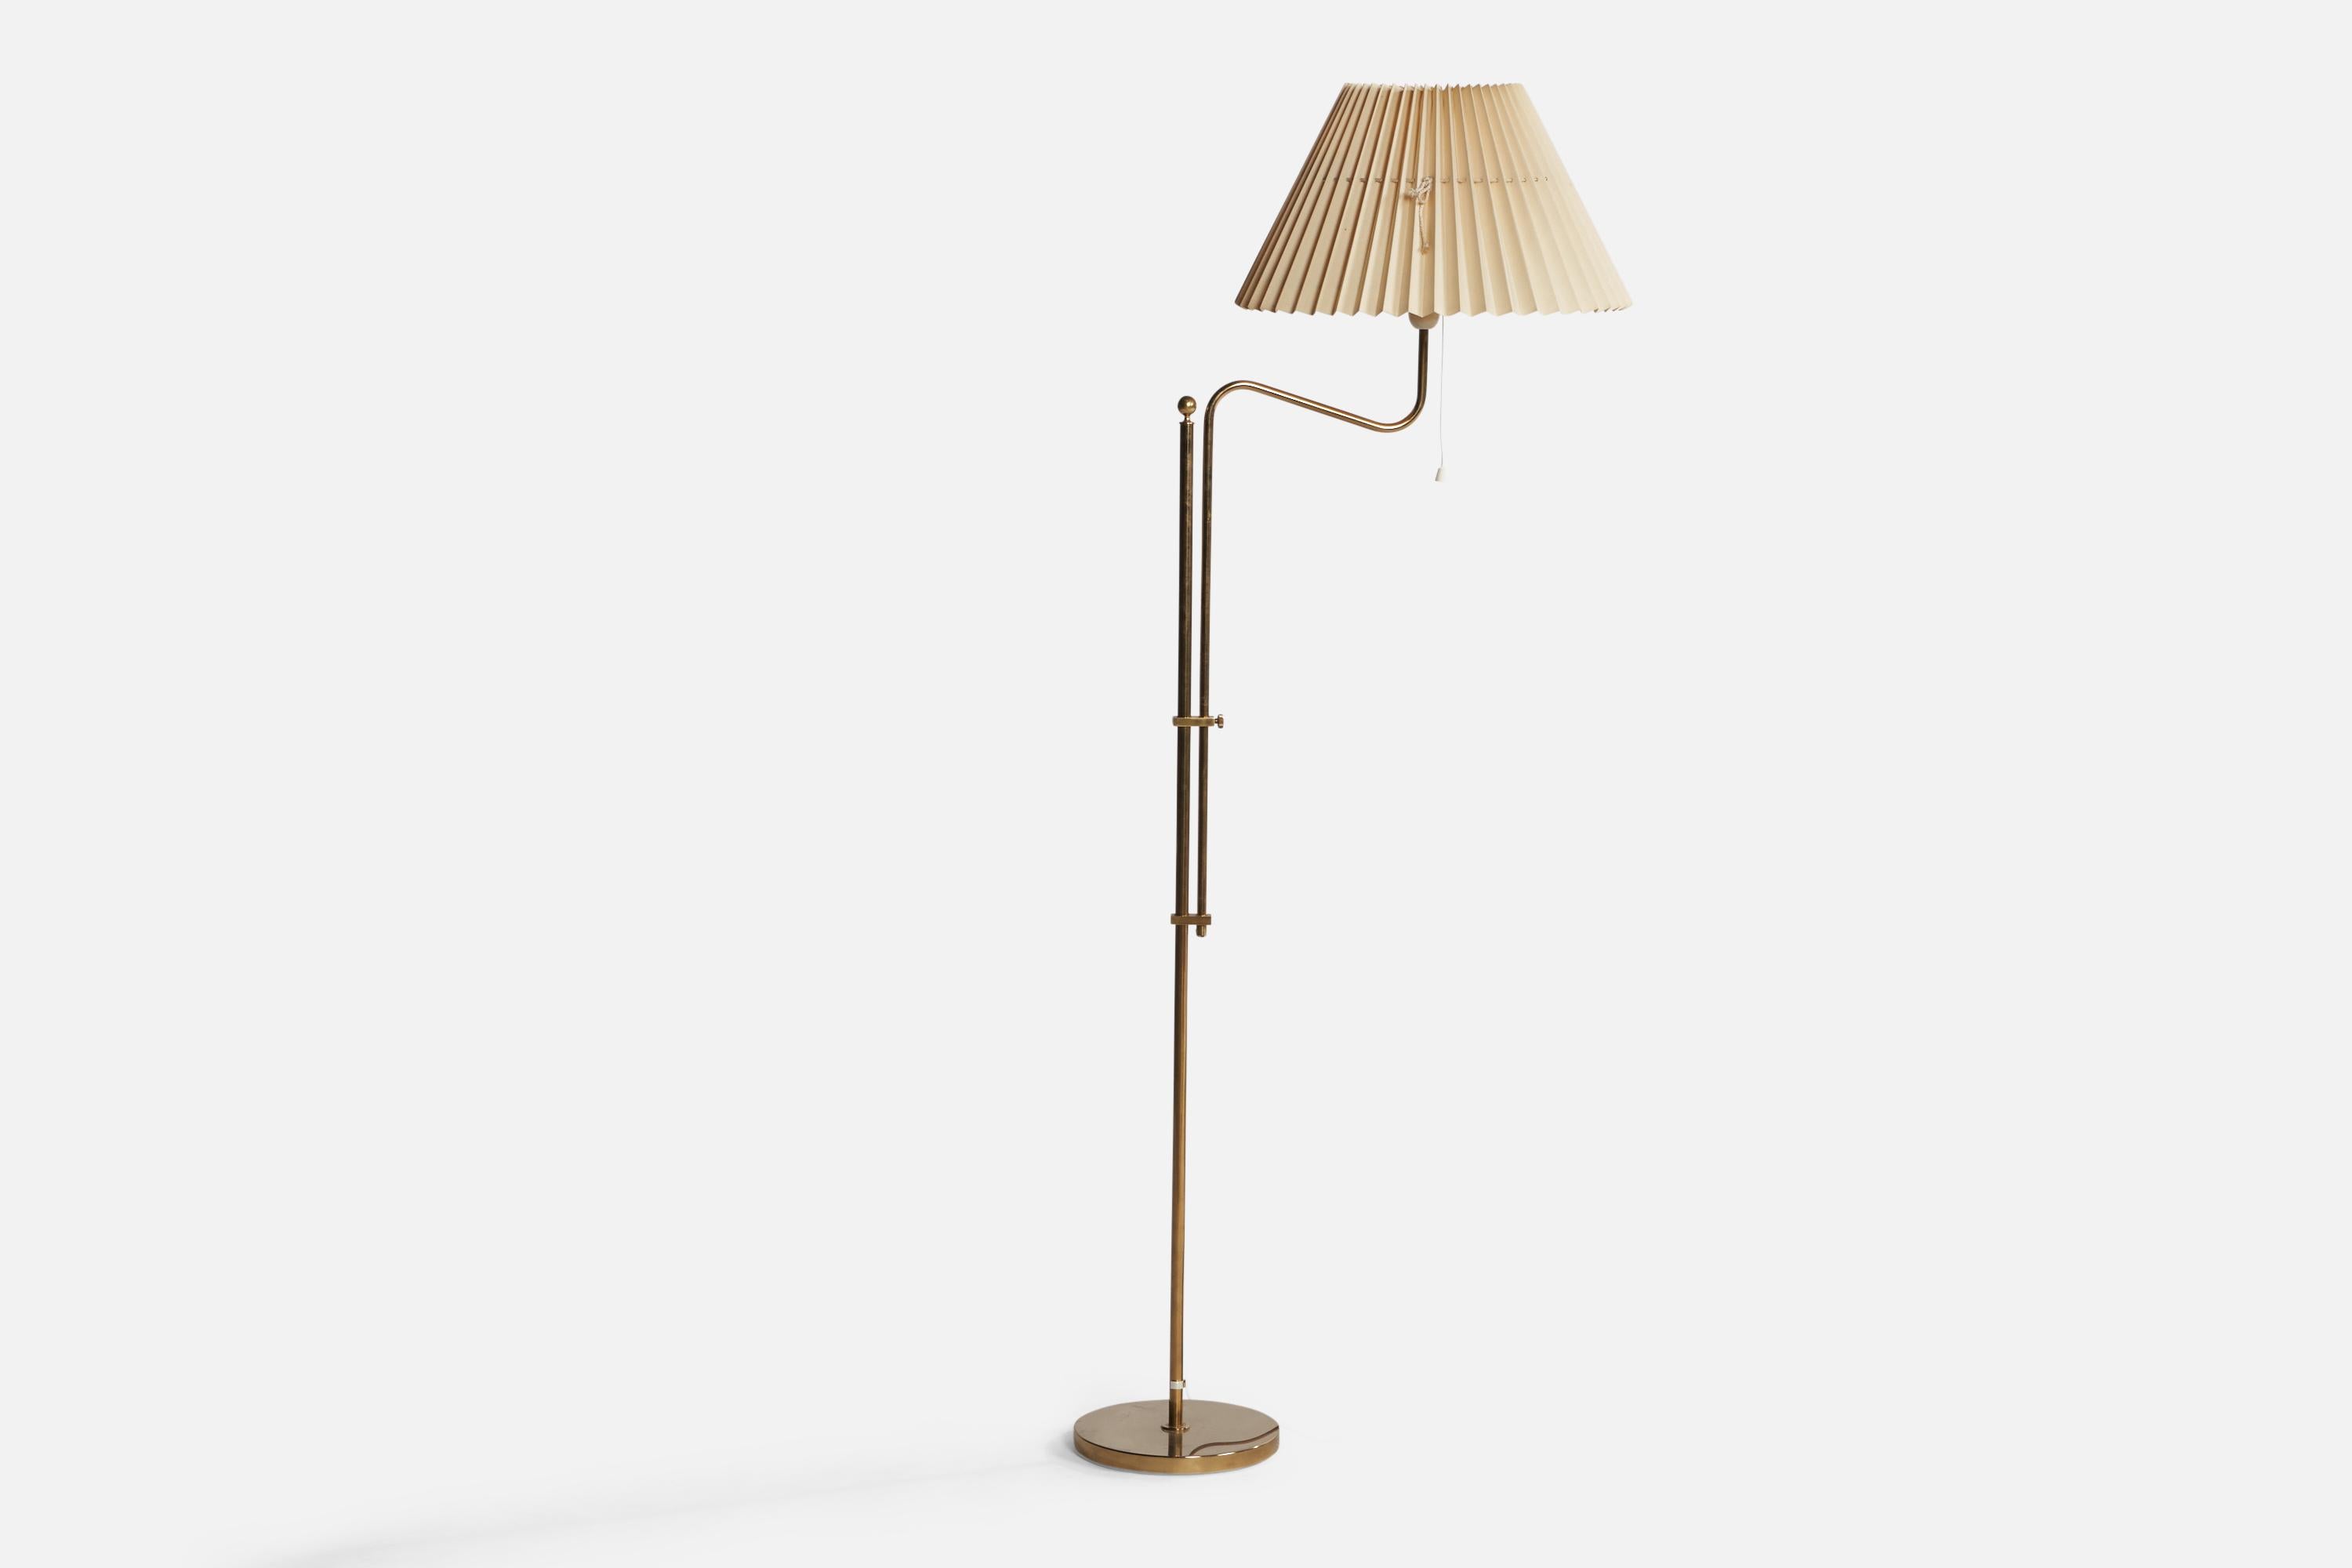 Eine verstellbare Stehlampe aus Messing und beigem Papier, entworfen und hergestellt von Bergboms, Schweden, 1960er Jahre.

Gesamtabmessungen (Zoll): 59,75